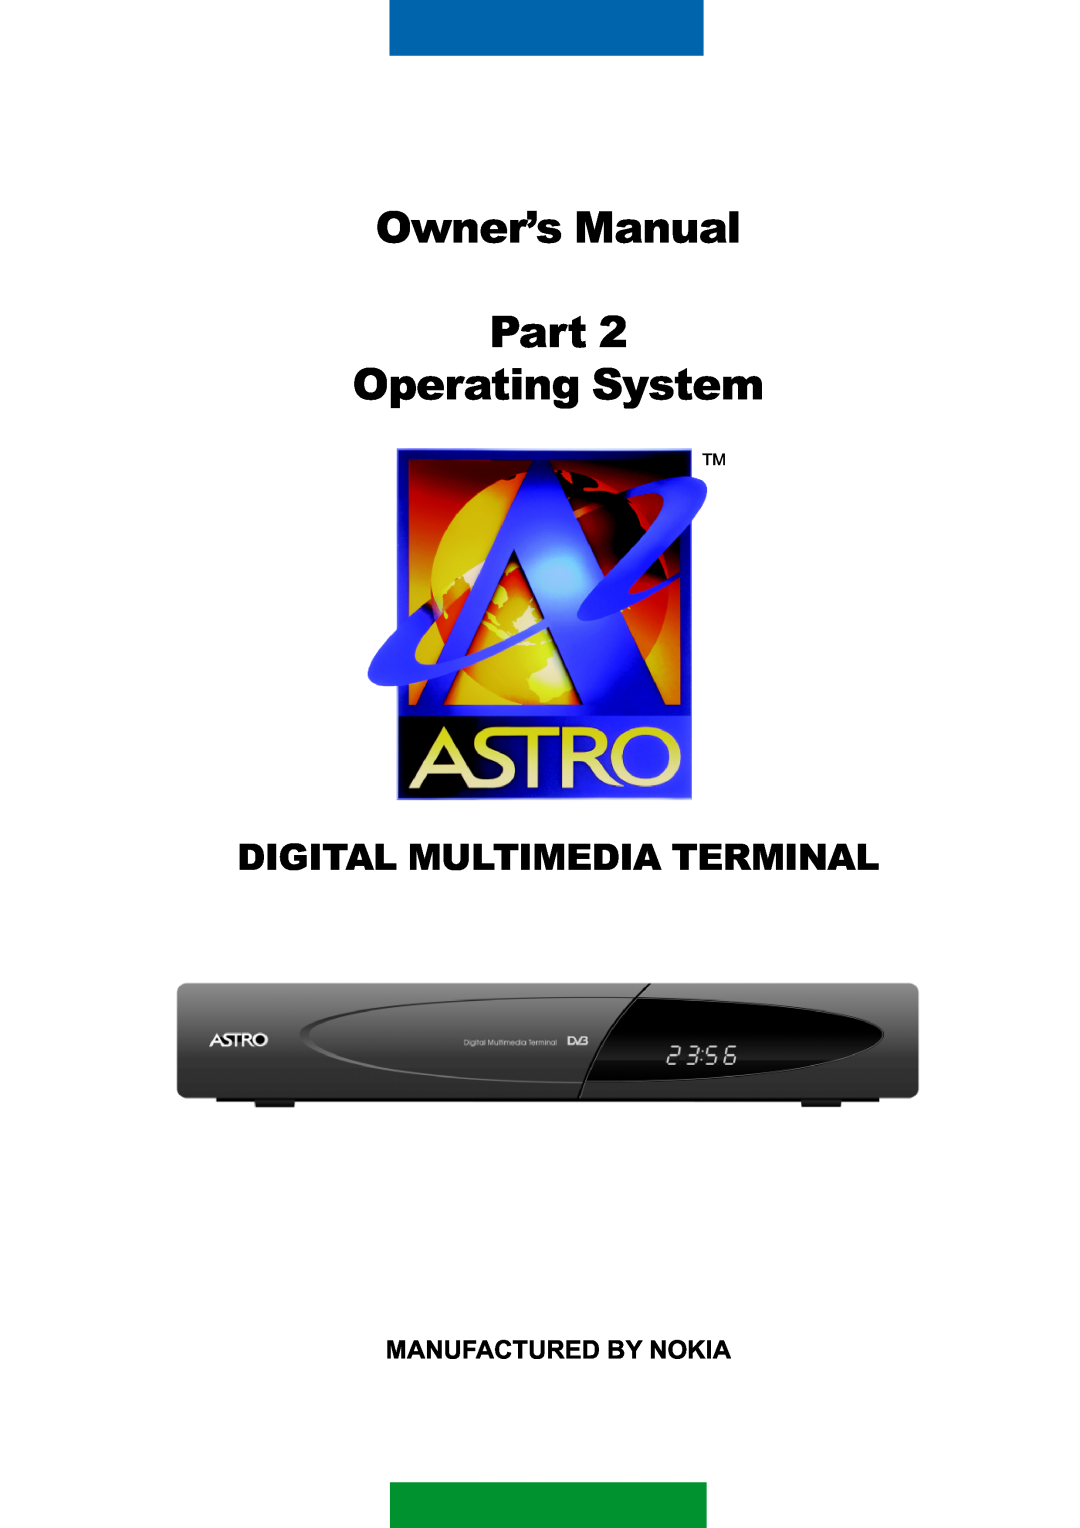 Nokia DIGITAL MULTIMEDIA TERMINAL owner manual OwnerÕs Manual Part Operating System, Digital Multimedia Terminal 